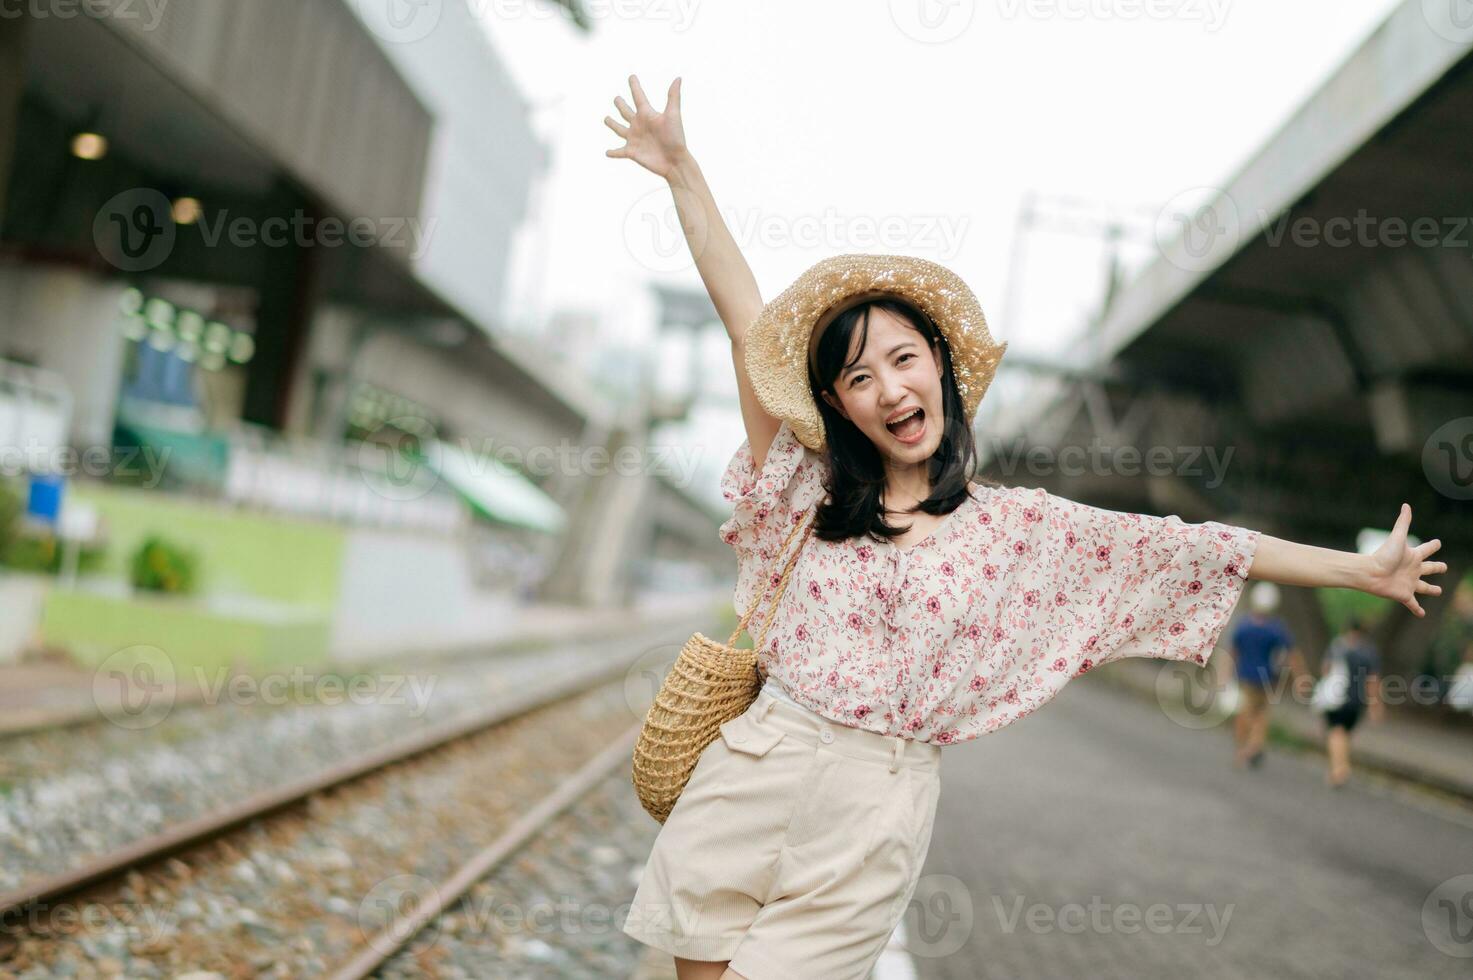 Jeune asiatique femme voyageur avec tissage panier content souriant à la recherche à une caméra à côté de train chemin de fer. périple voyage mode de vie, monde Voyage explorateur ou Asie été tourisme concept. photo